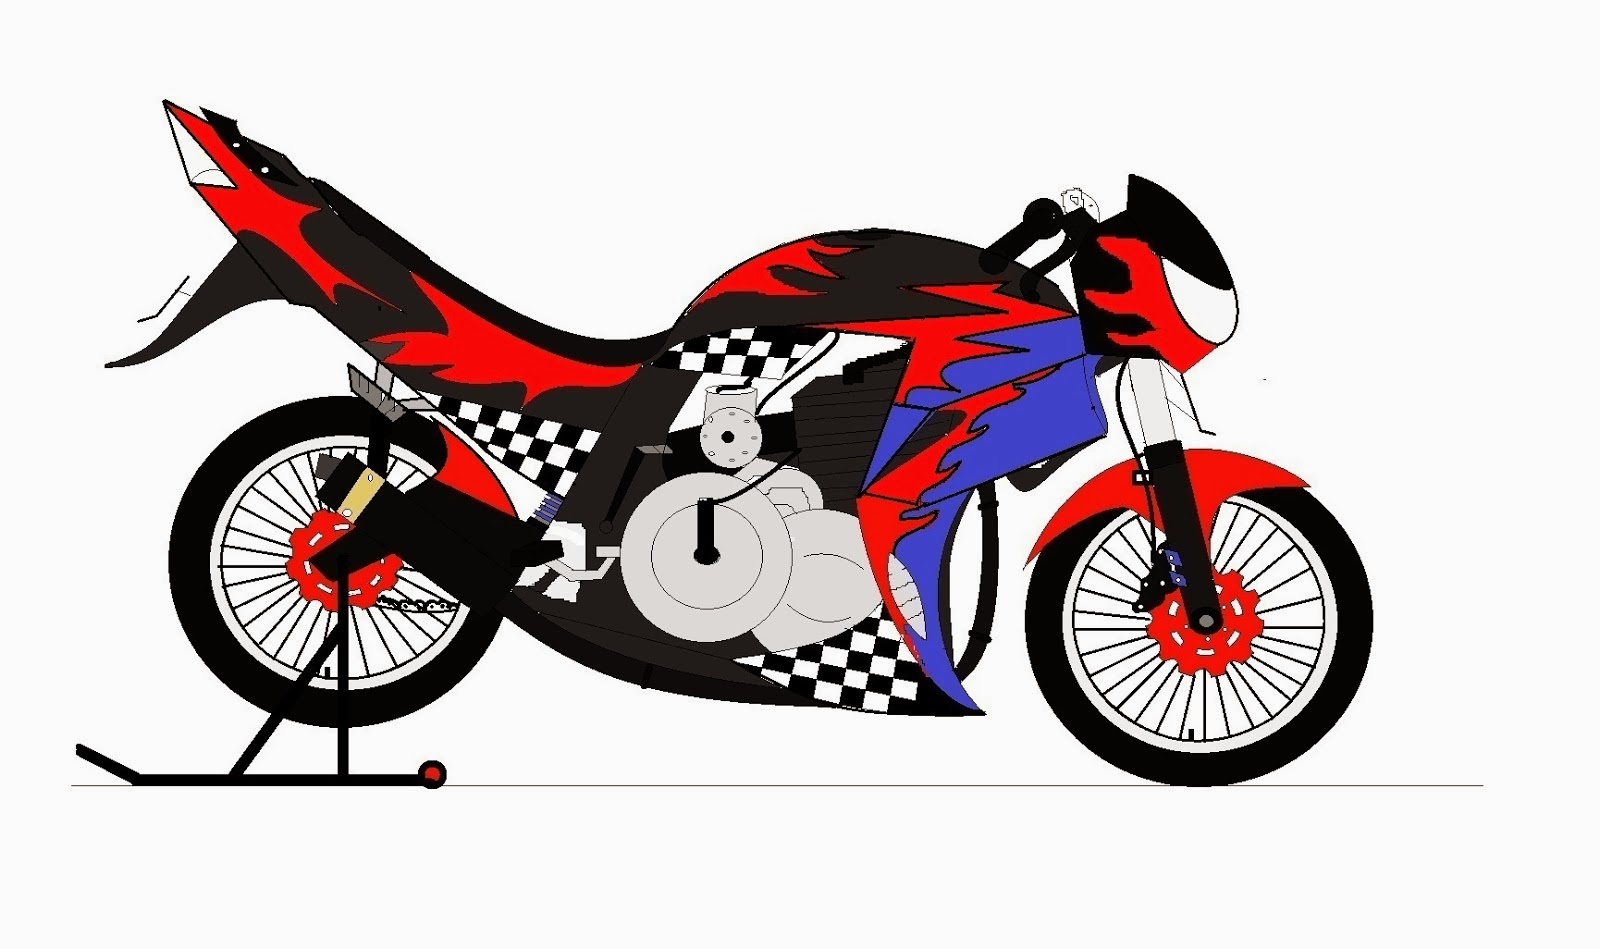  Gambar  Motor Drag  Bike Kartun  motorcyclepict co